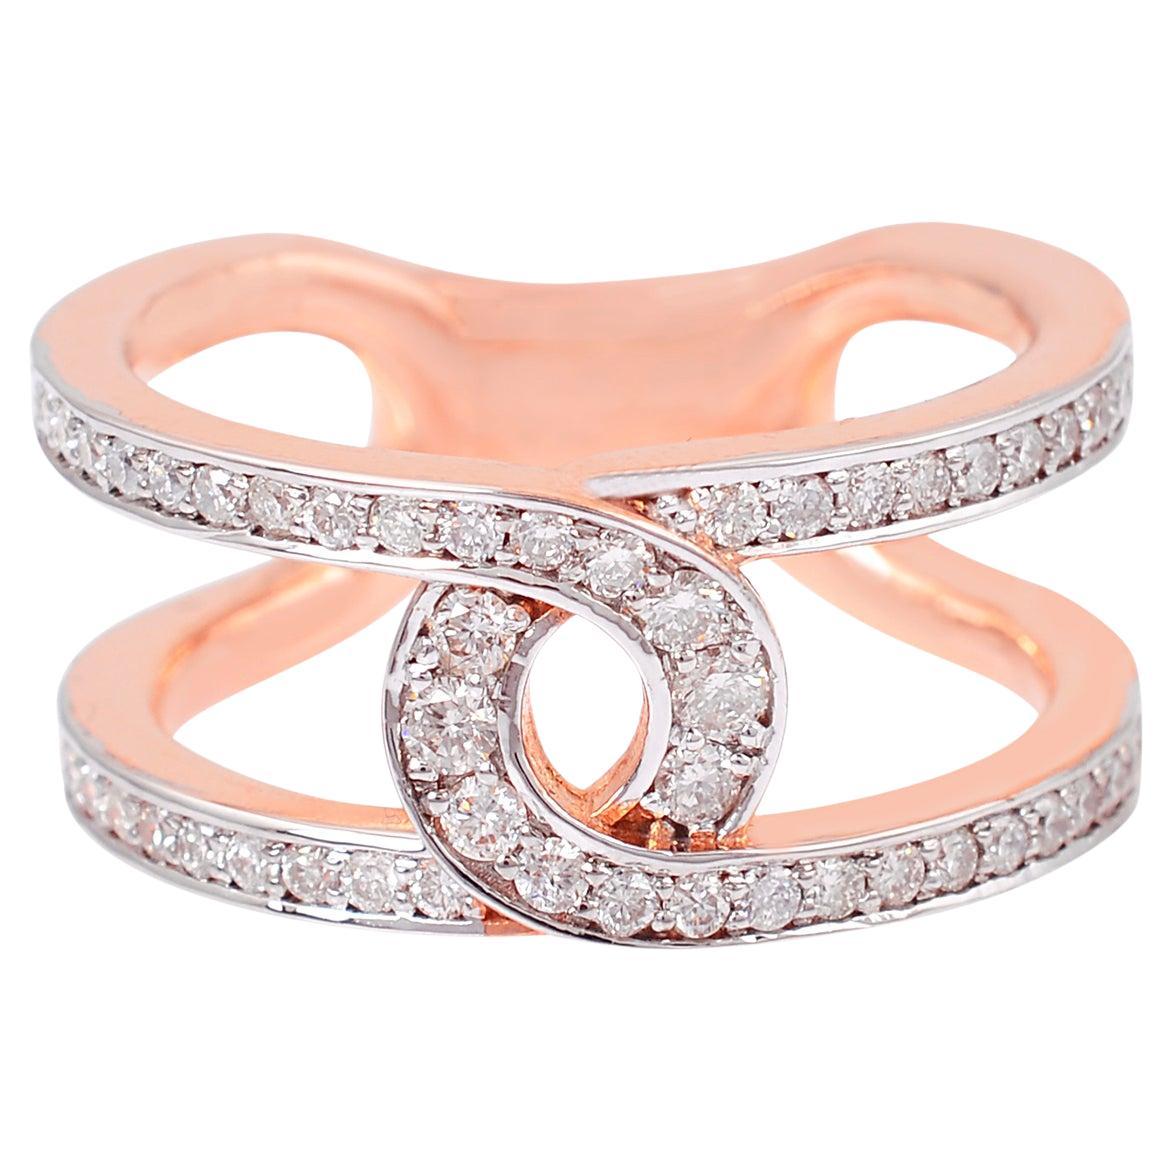 Natural 0.70 Carat SI Clarity HI Color Diamond Ring 18 Karat Rose Gold Jewelry